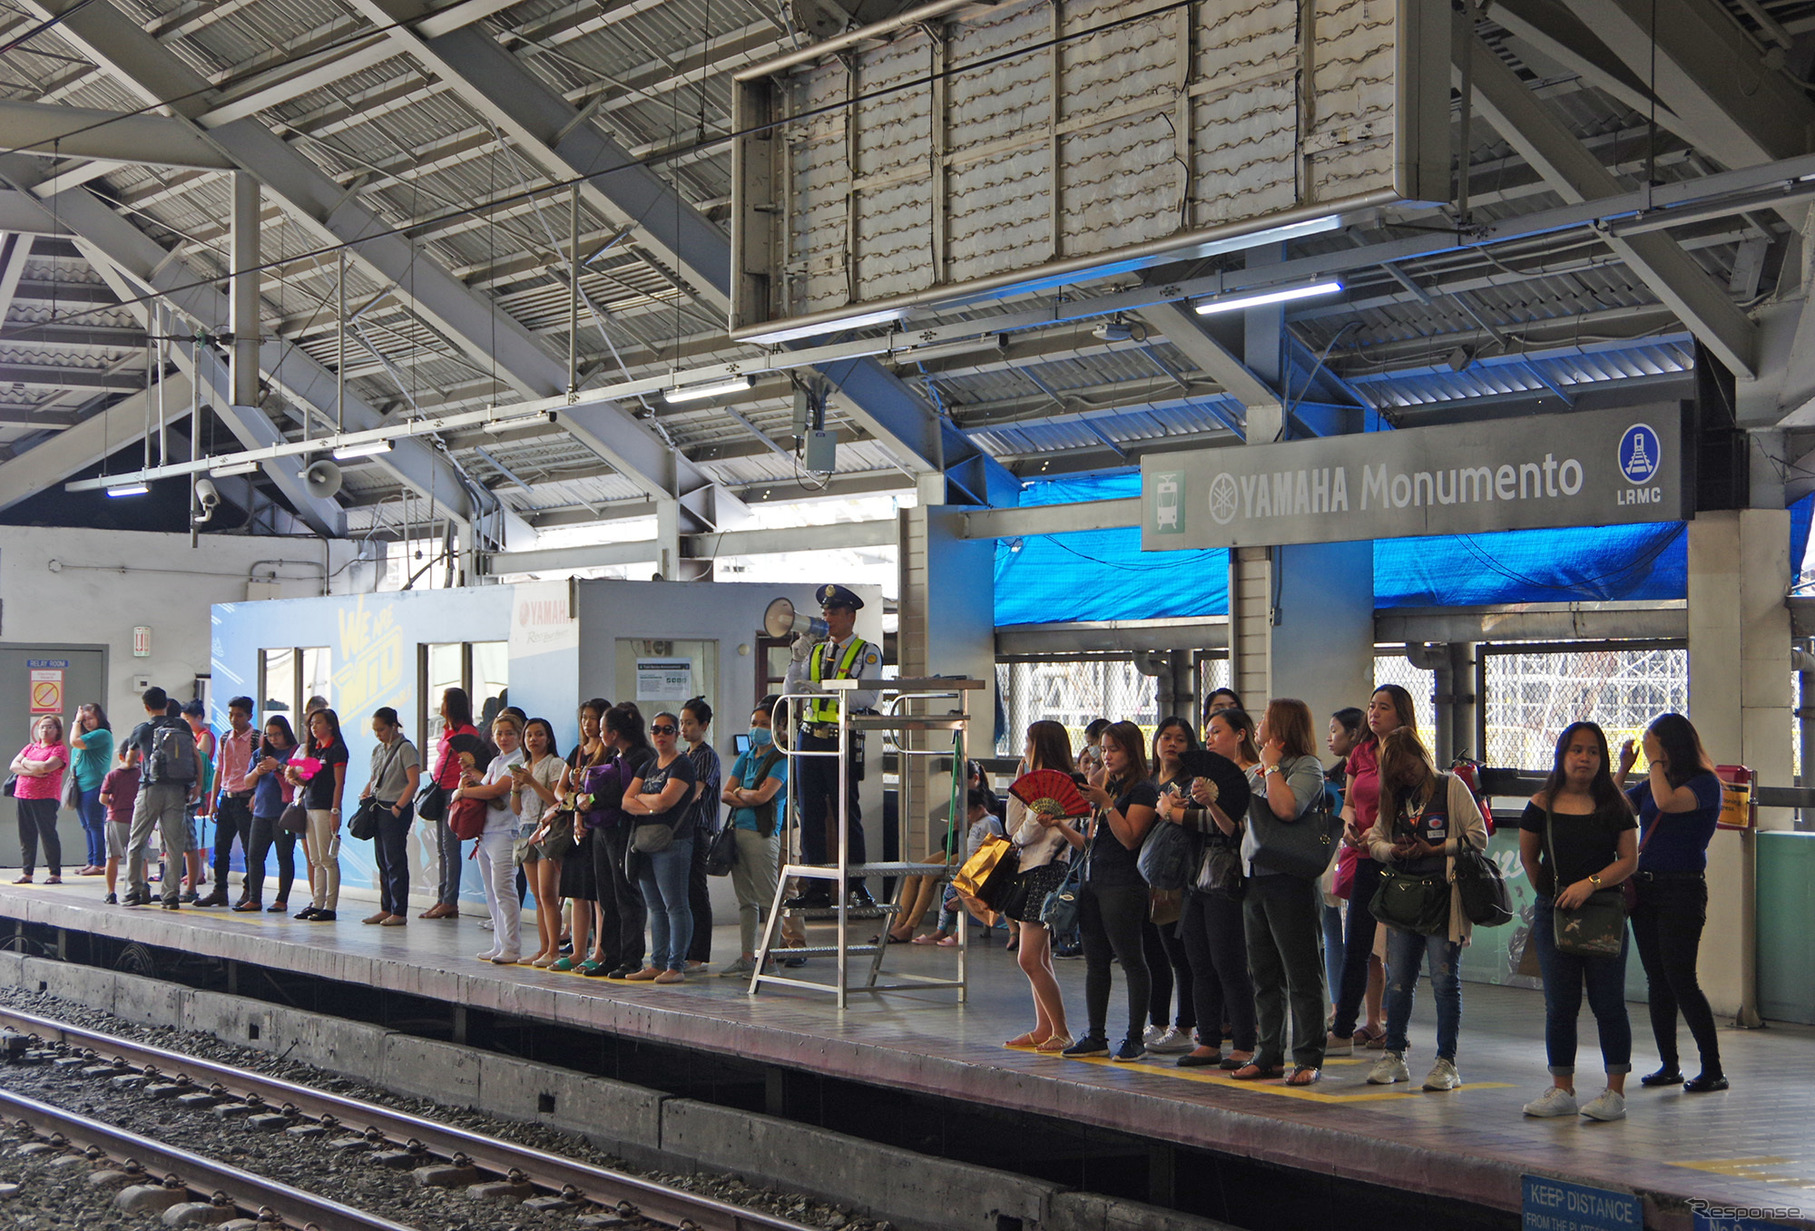 若者の乗降客が多いのがヤマハモニュメント駅の大きな特徴だ